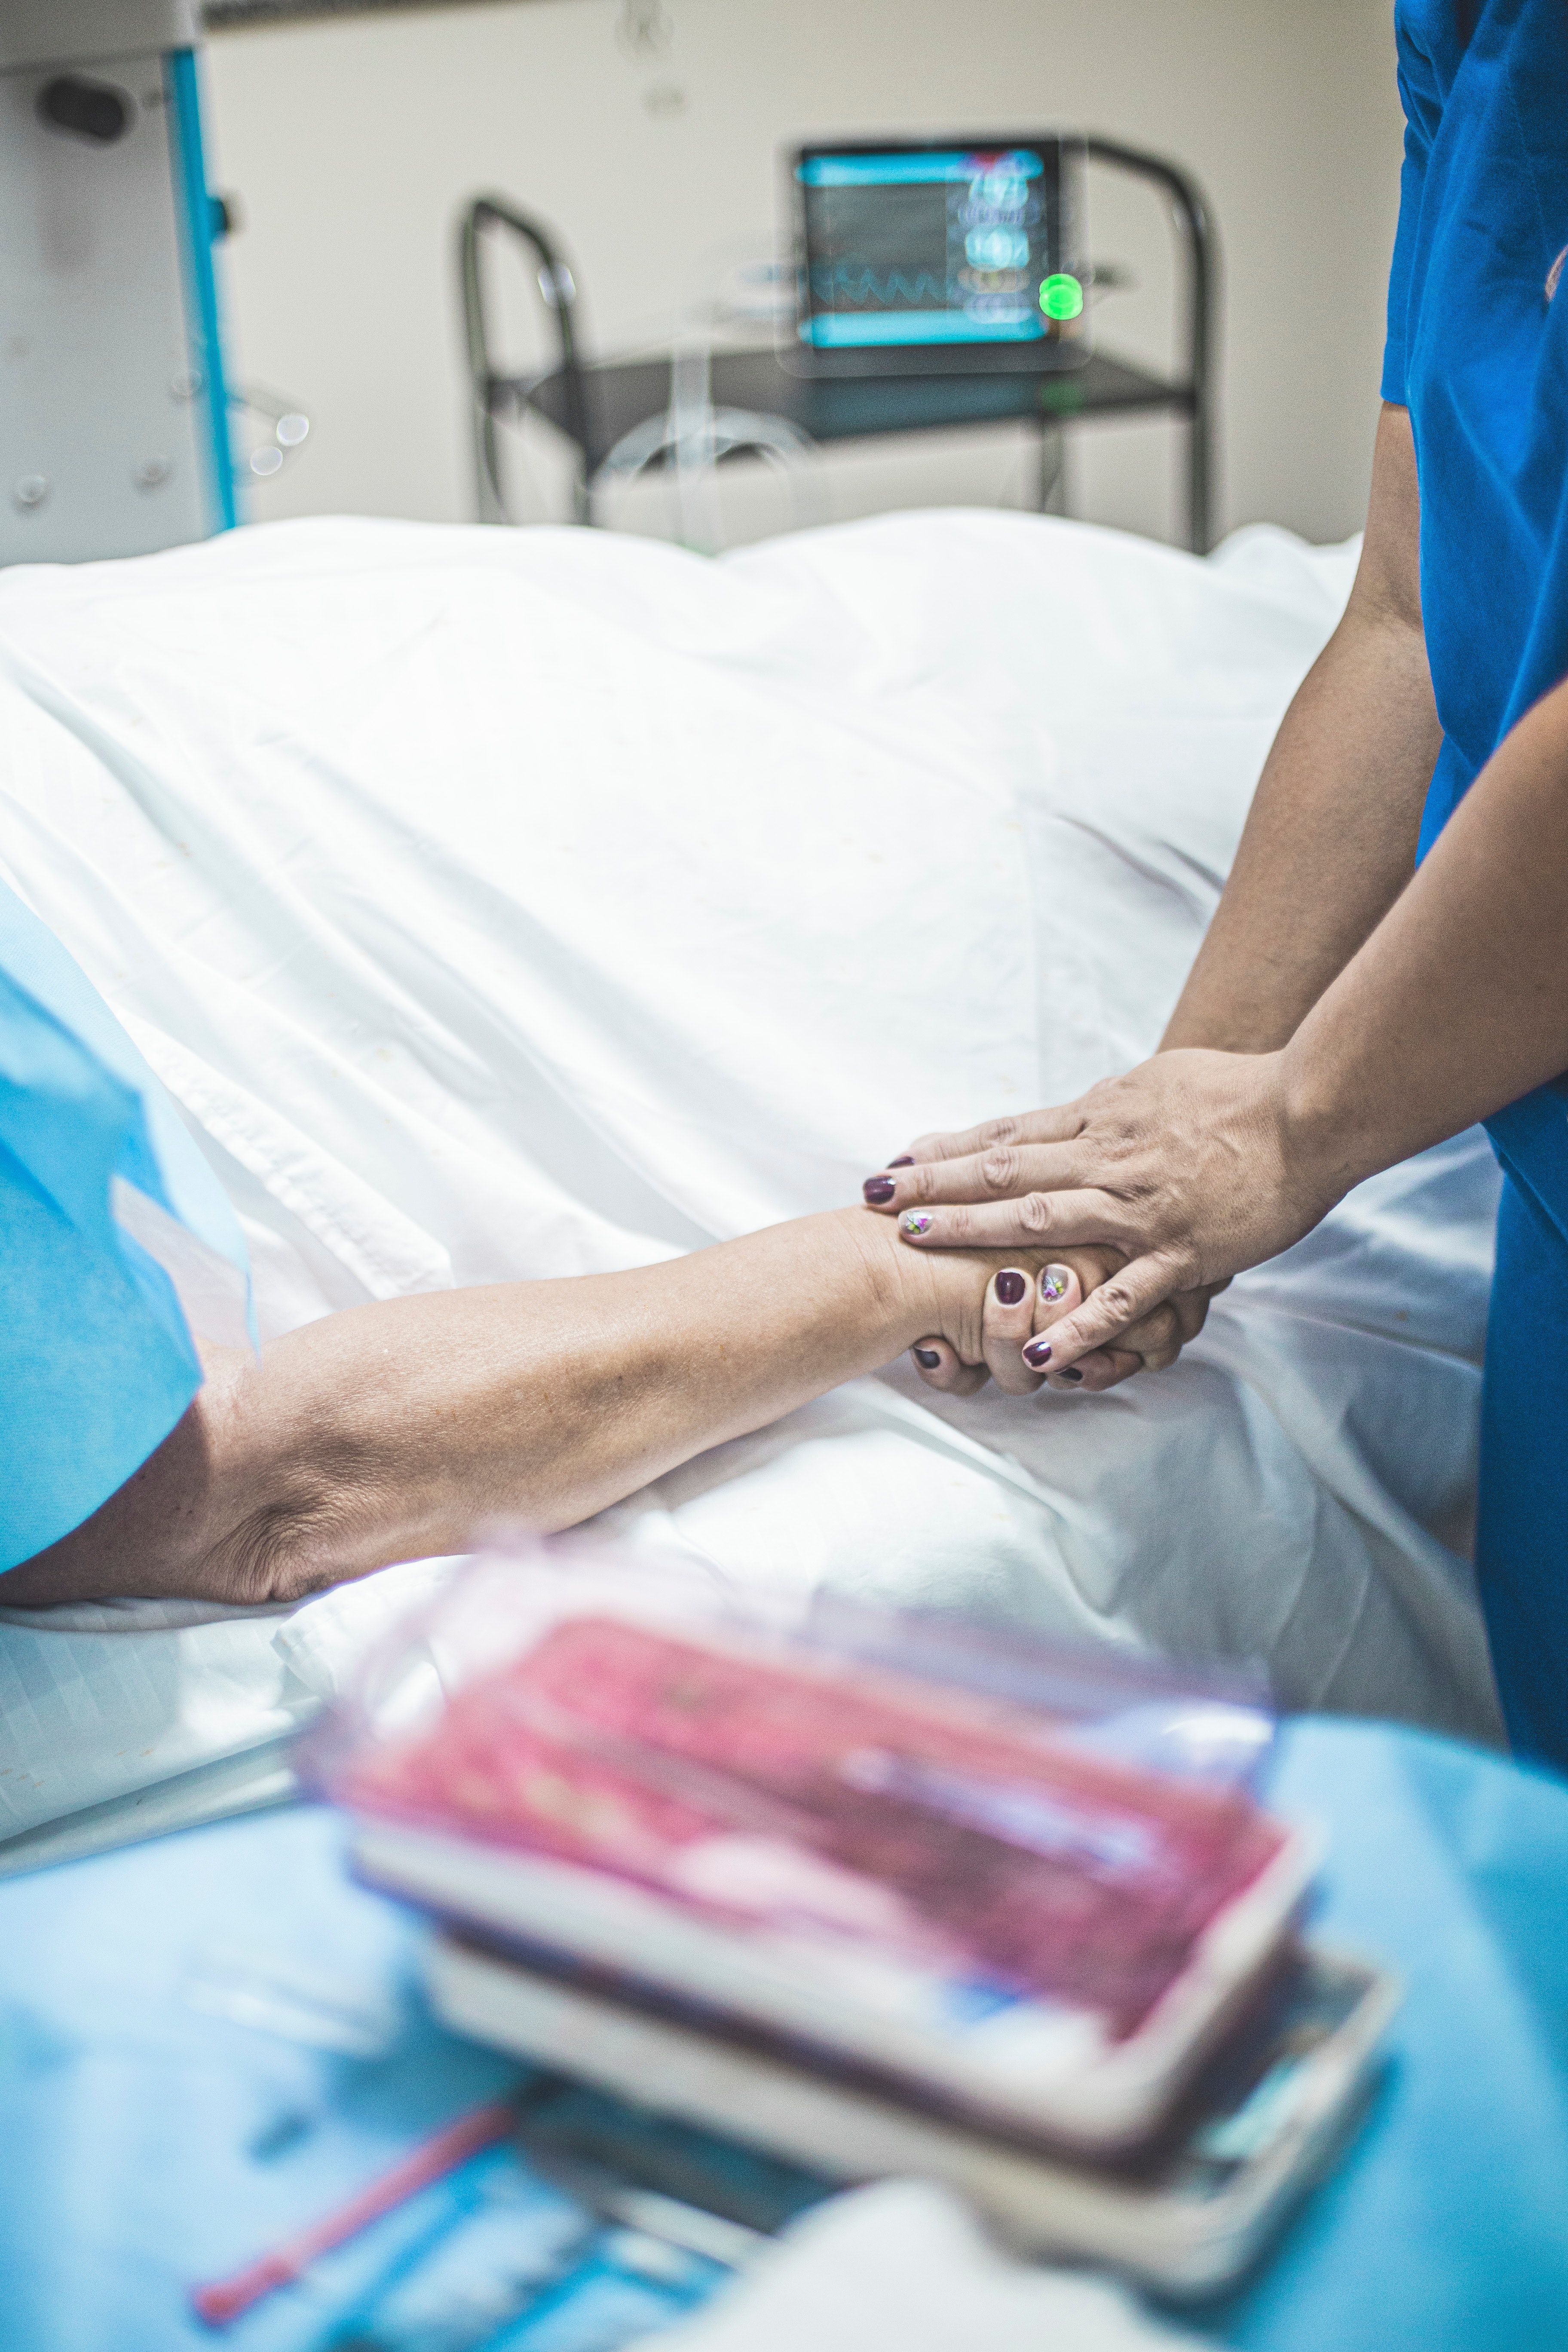 Persona con bata azul cogiendo la mano de un paciente tumbado en la cama | Fuente: Pexels